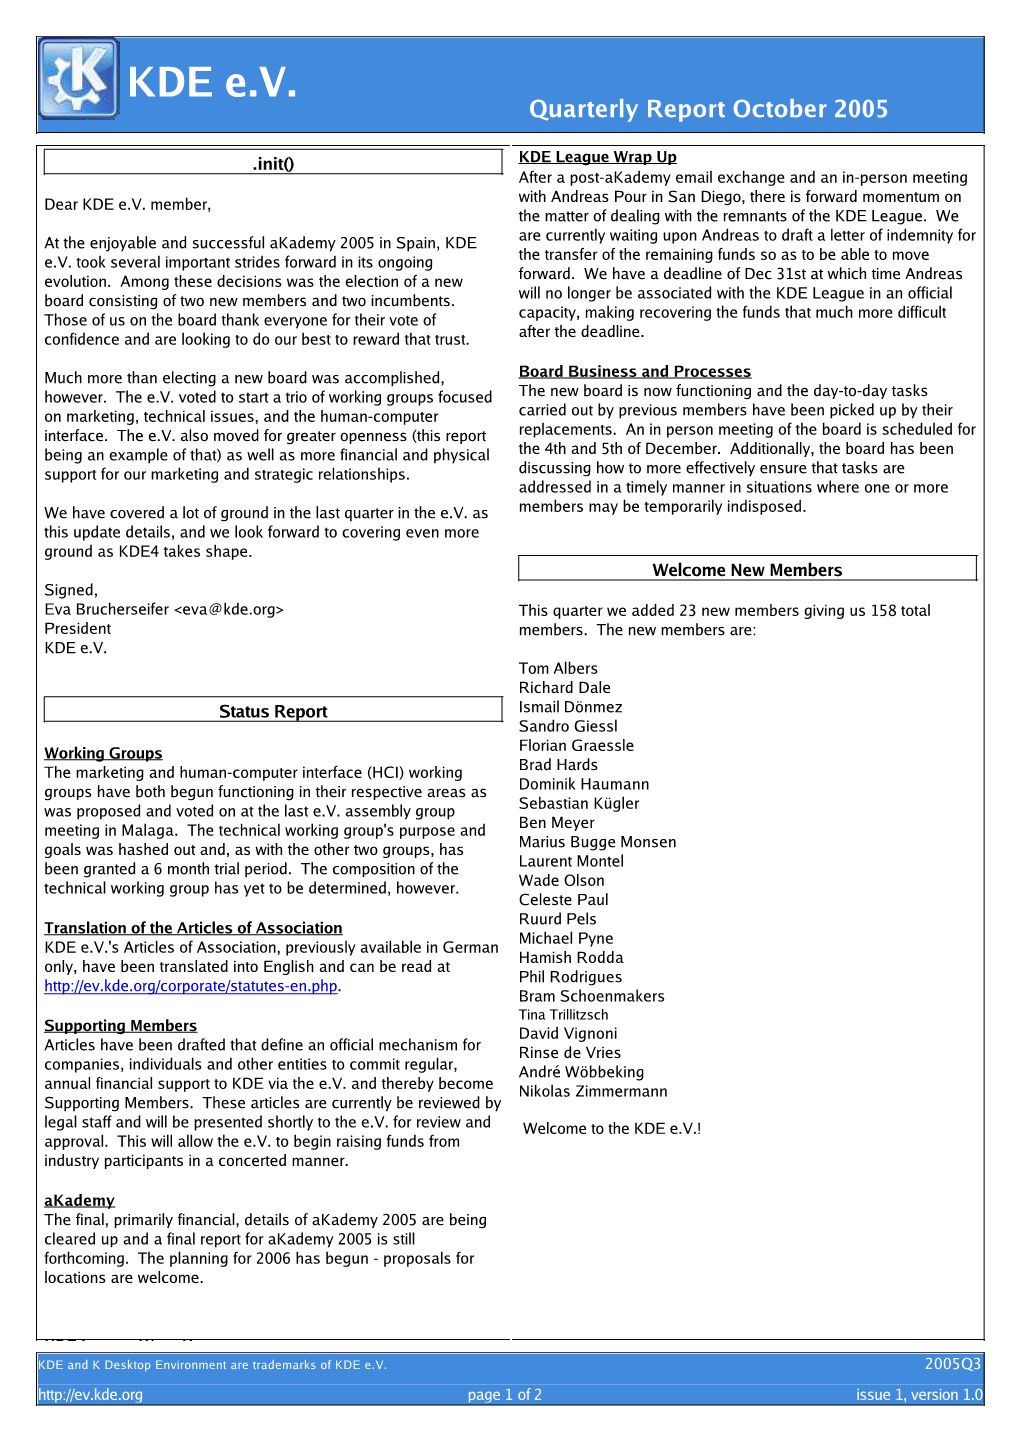 KDE E.V. Quarterly Report 2005Q3 (Issue 1)